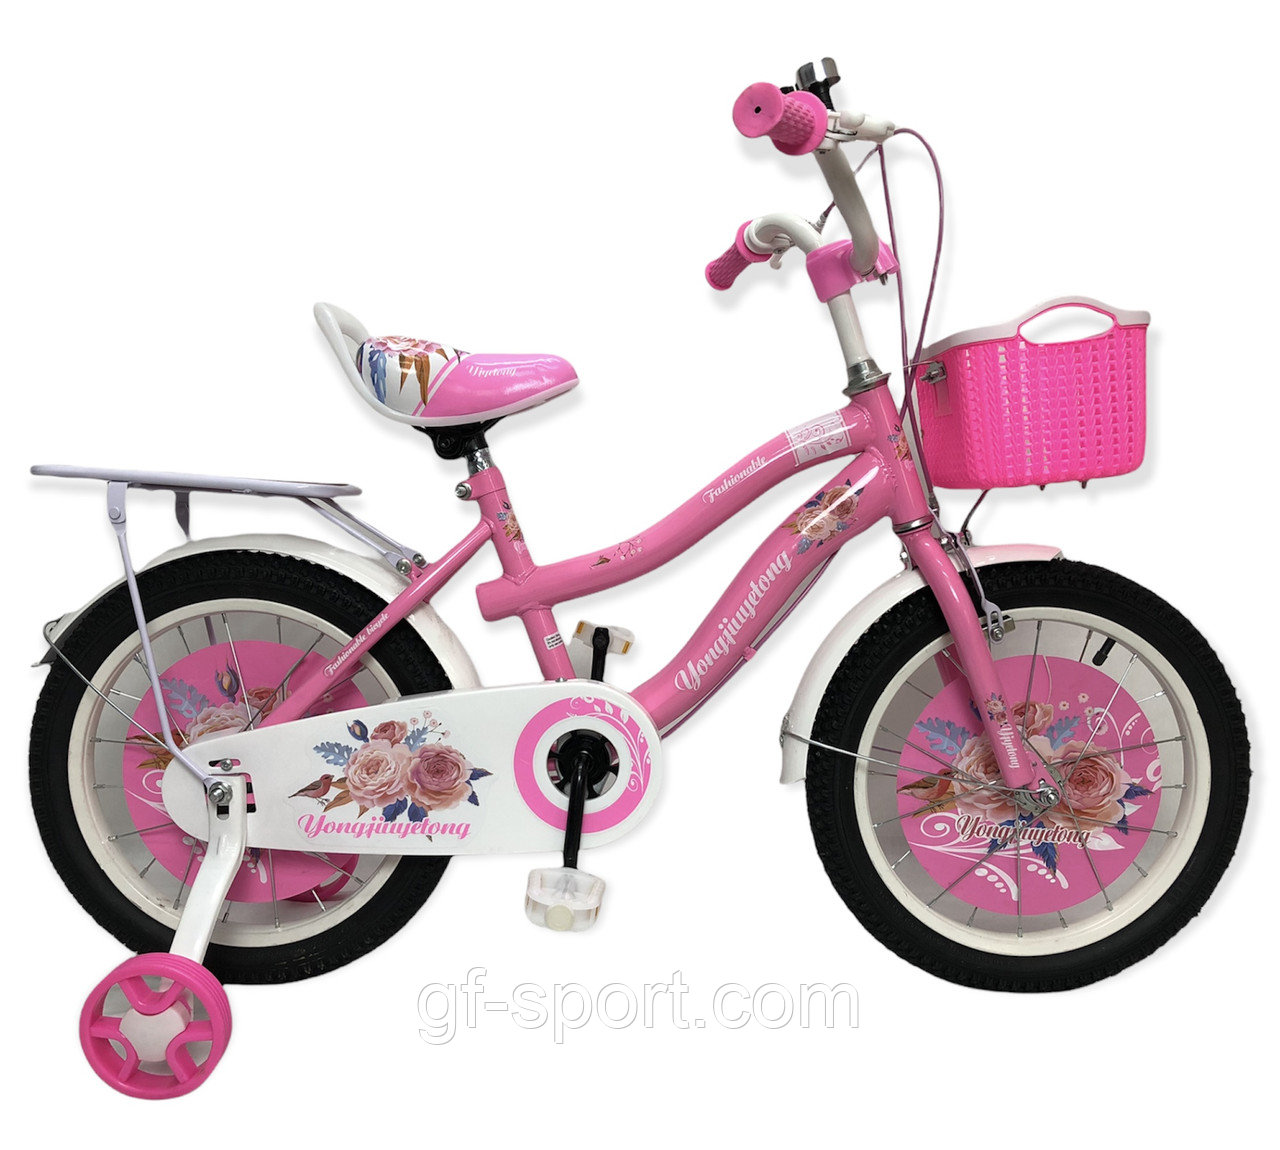 Велосипед Rose Baby розовый оригинал детский с холостым ходом 16 размер (510-16)